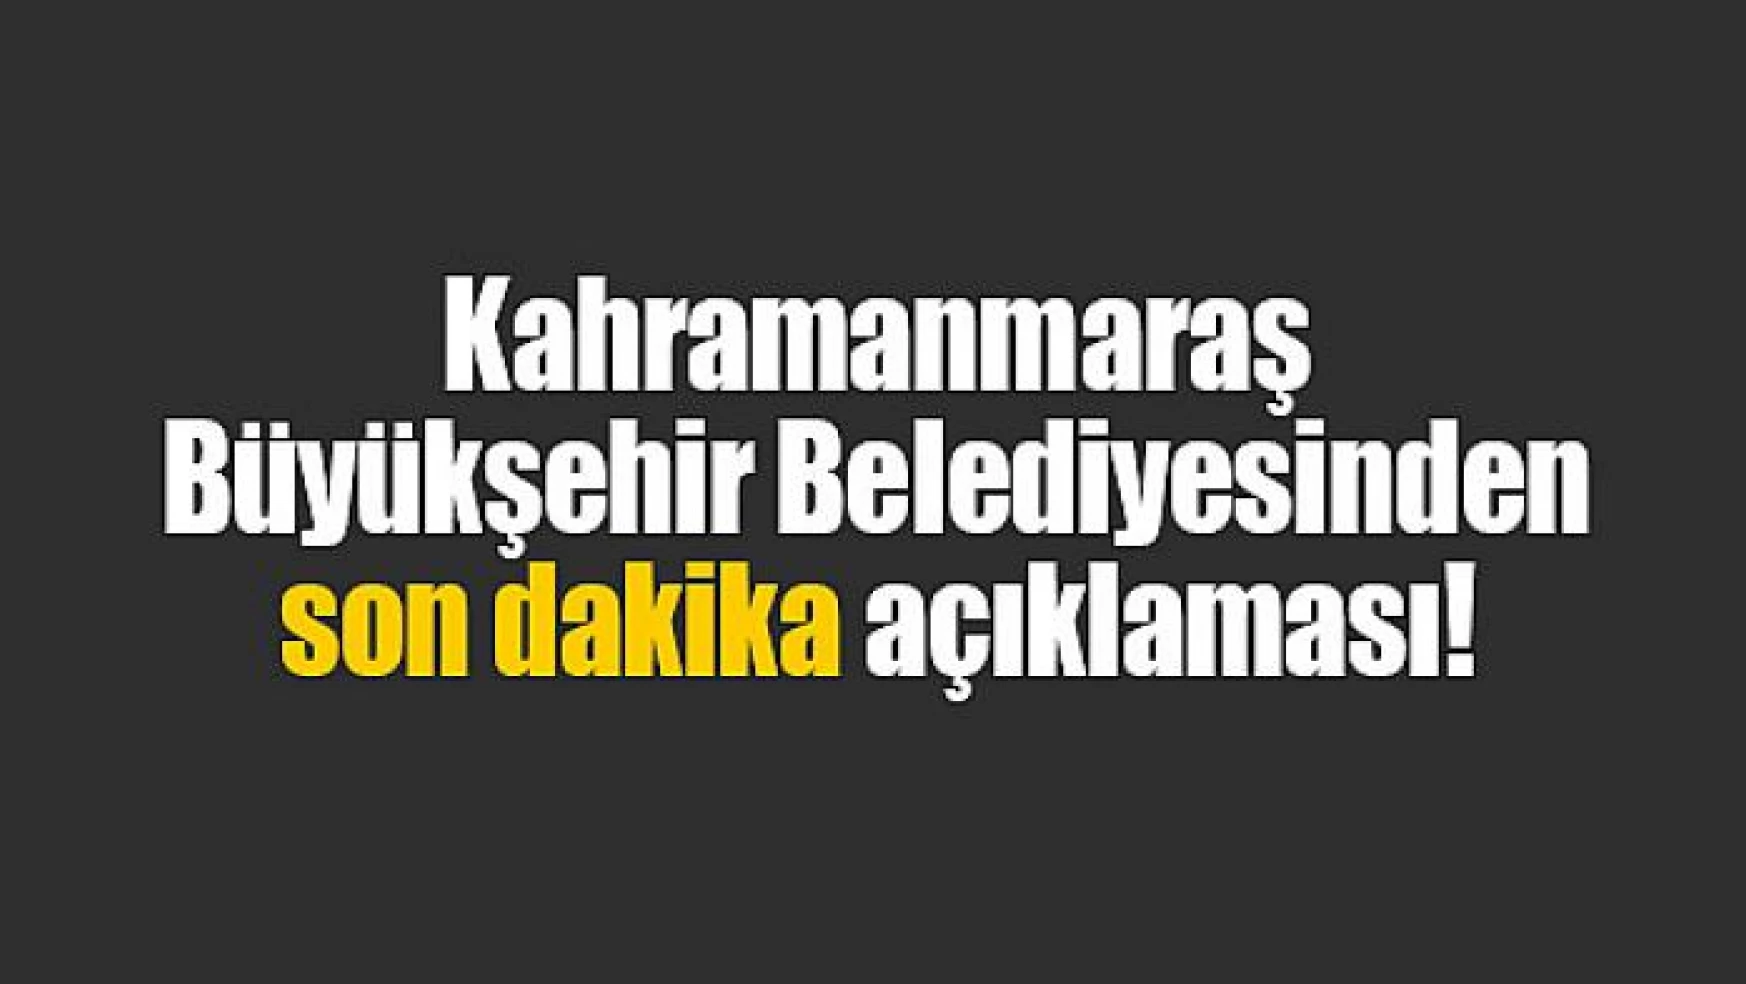 Kahramanmaraş Büyükşehir Belediyesinden son dakika açıklaması!